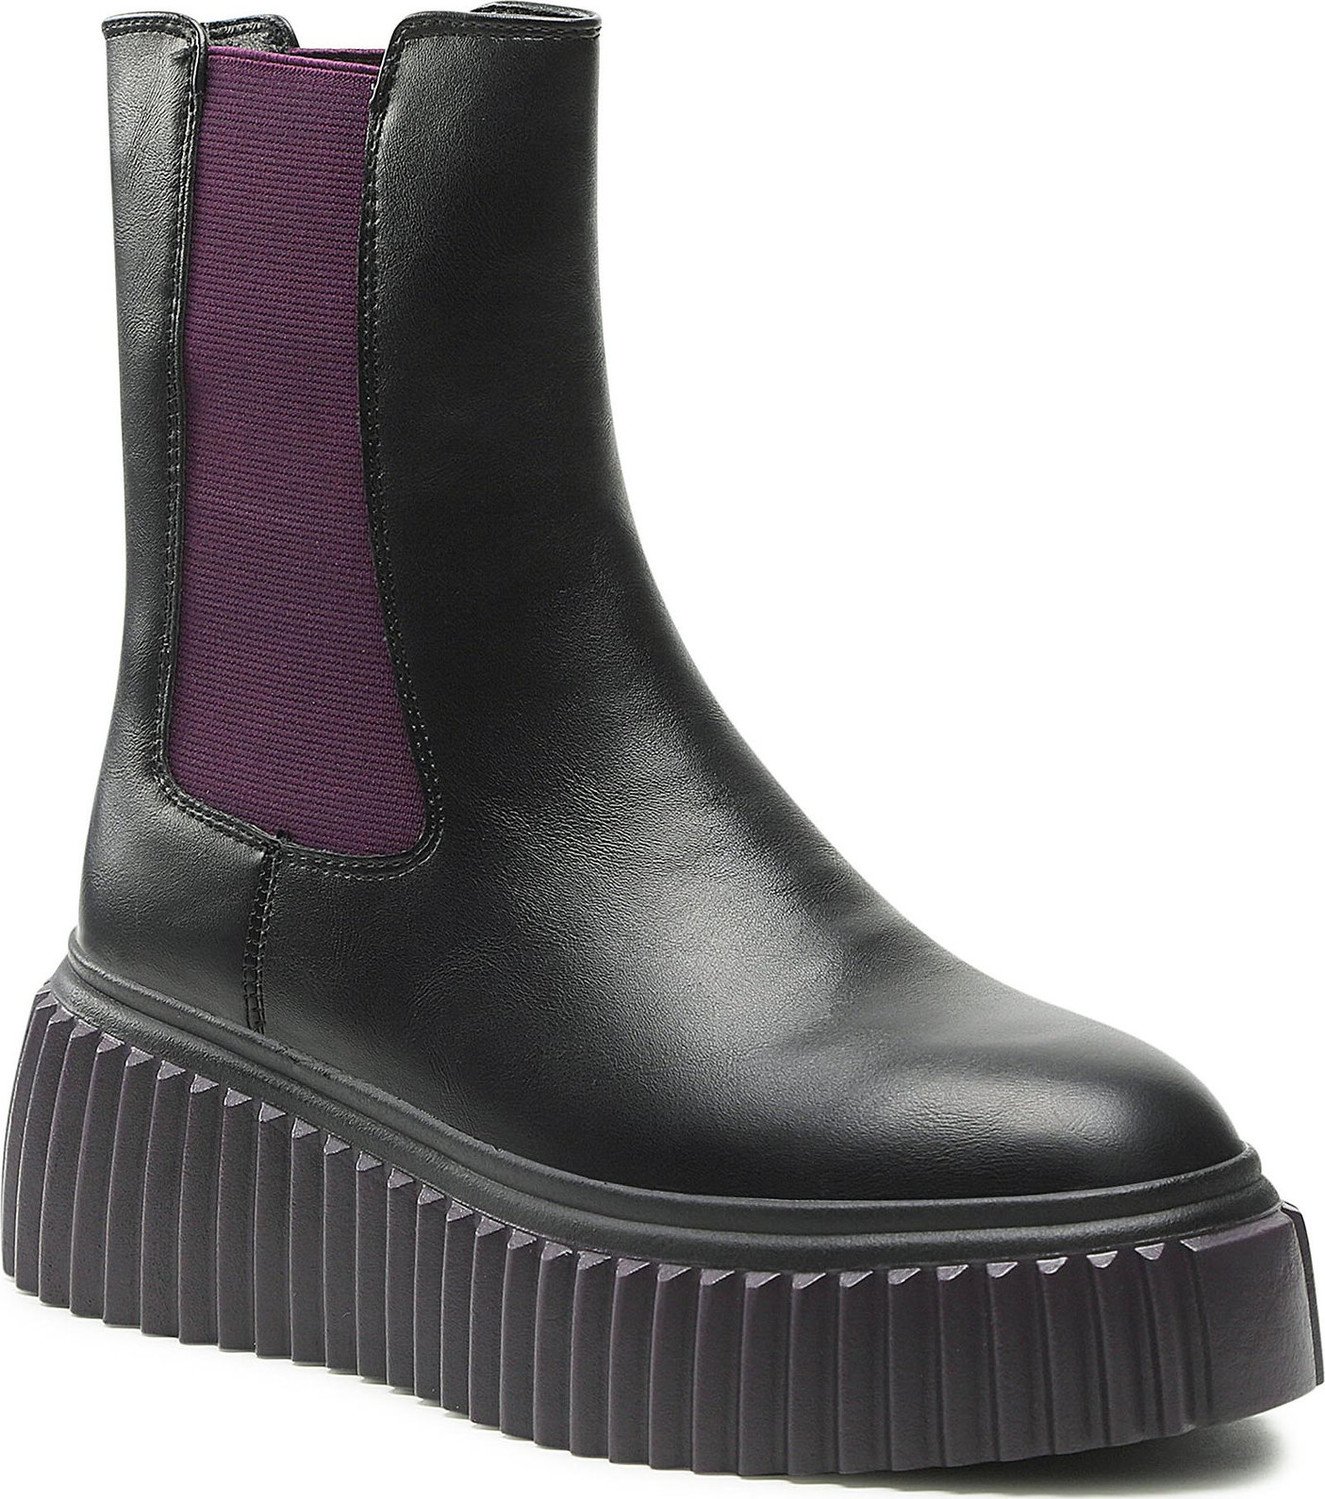 Kotníková obuv s elastickým prvkem Keddo 828126/09-03E Black/Lilac